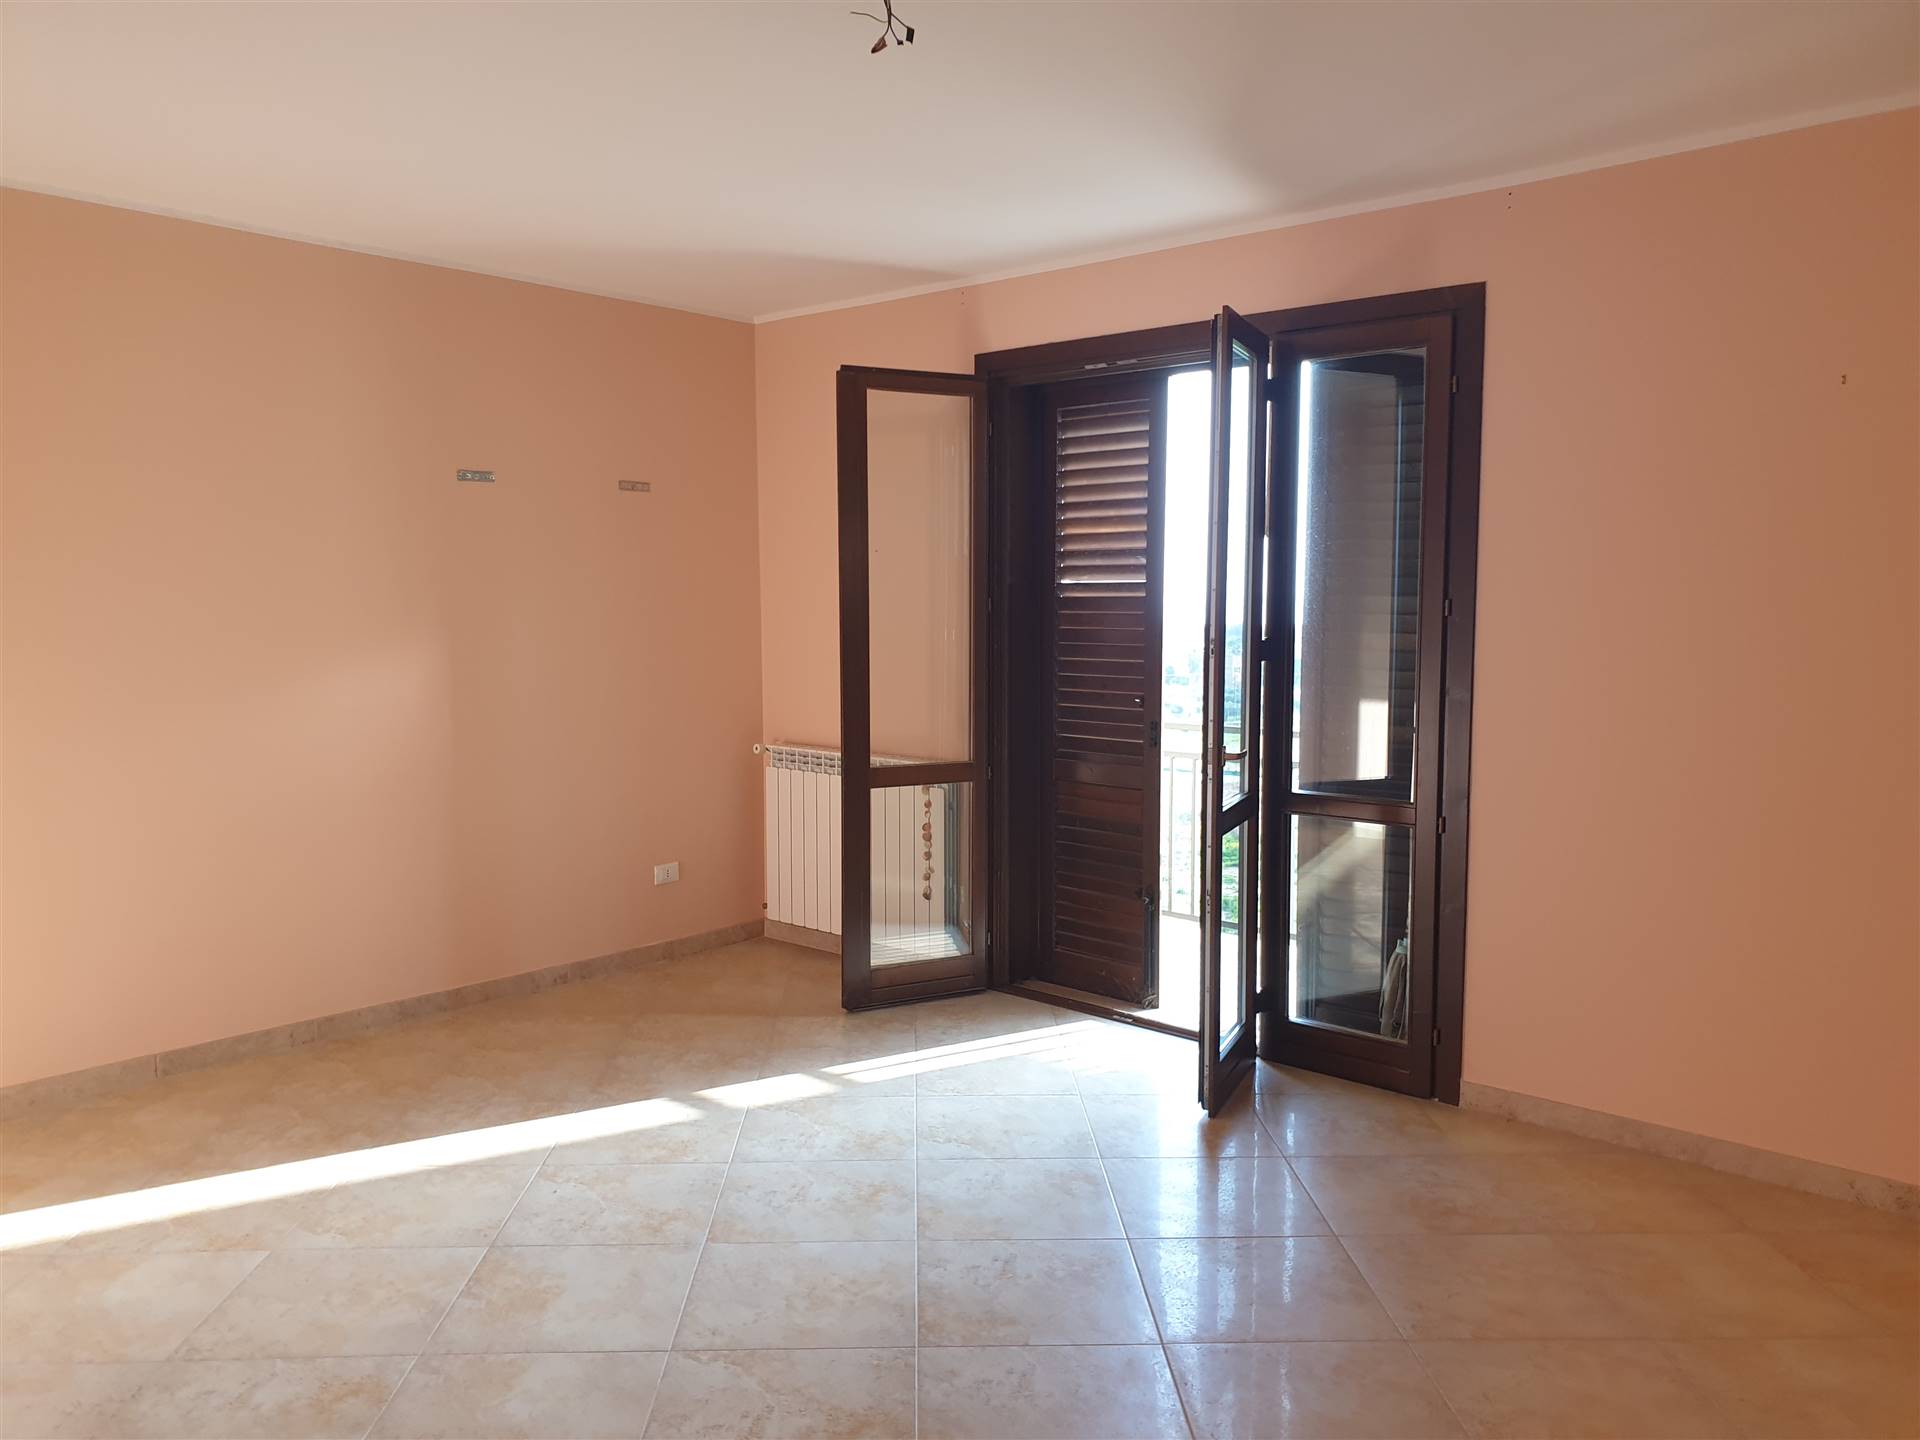 Appartamento in affitto a Marsala, 5 locali, zona Località: LATO MAZARA, prezzo € 500 | CambioCasa.it